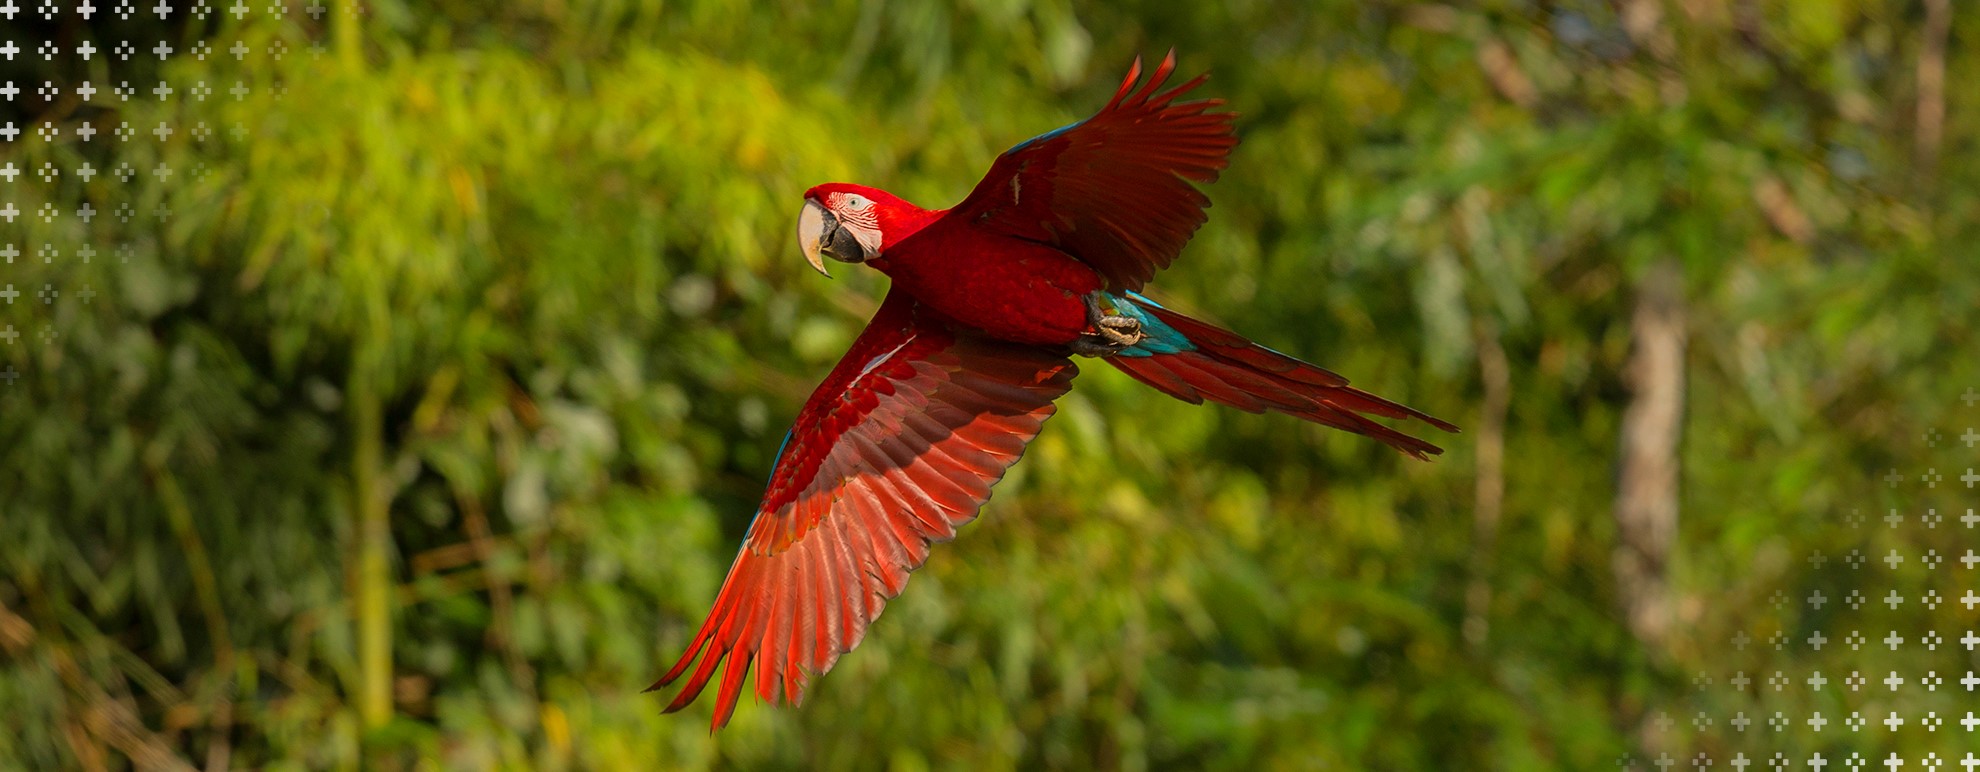 Ecológico - Imagem de uma arara vermelha voando. Atrás dela, há uma floresta, desfocada.